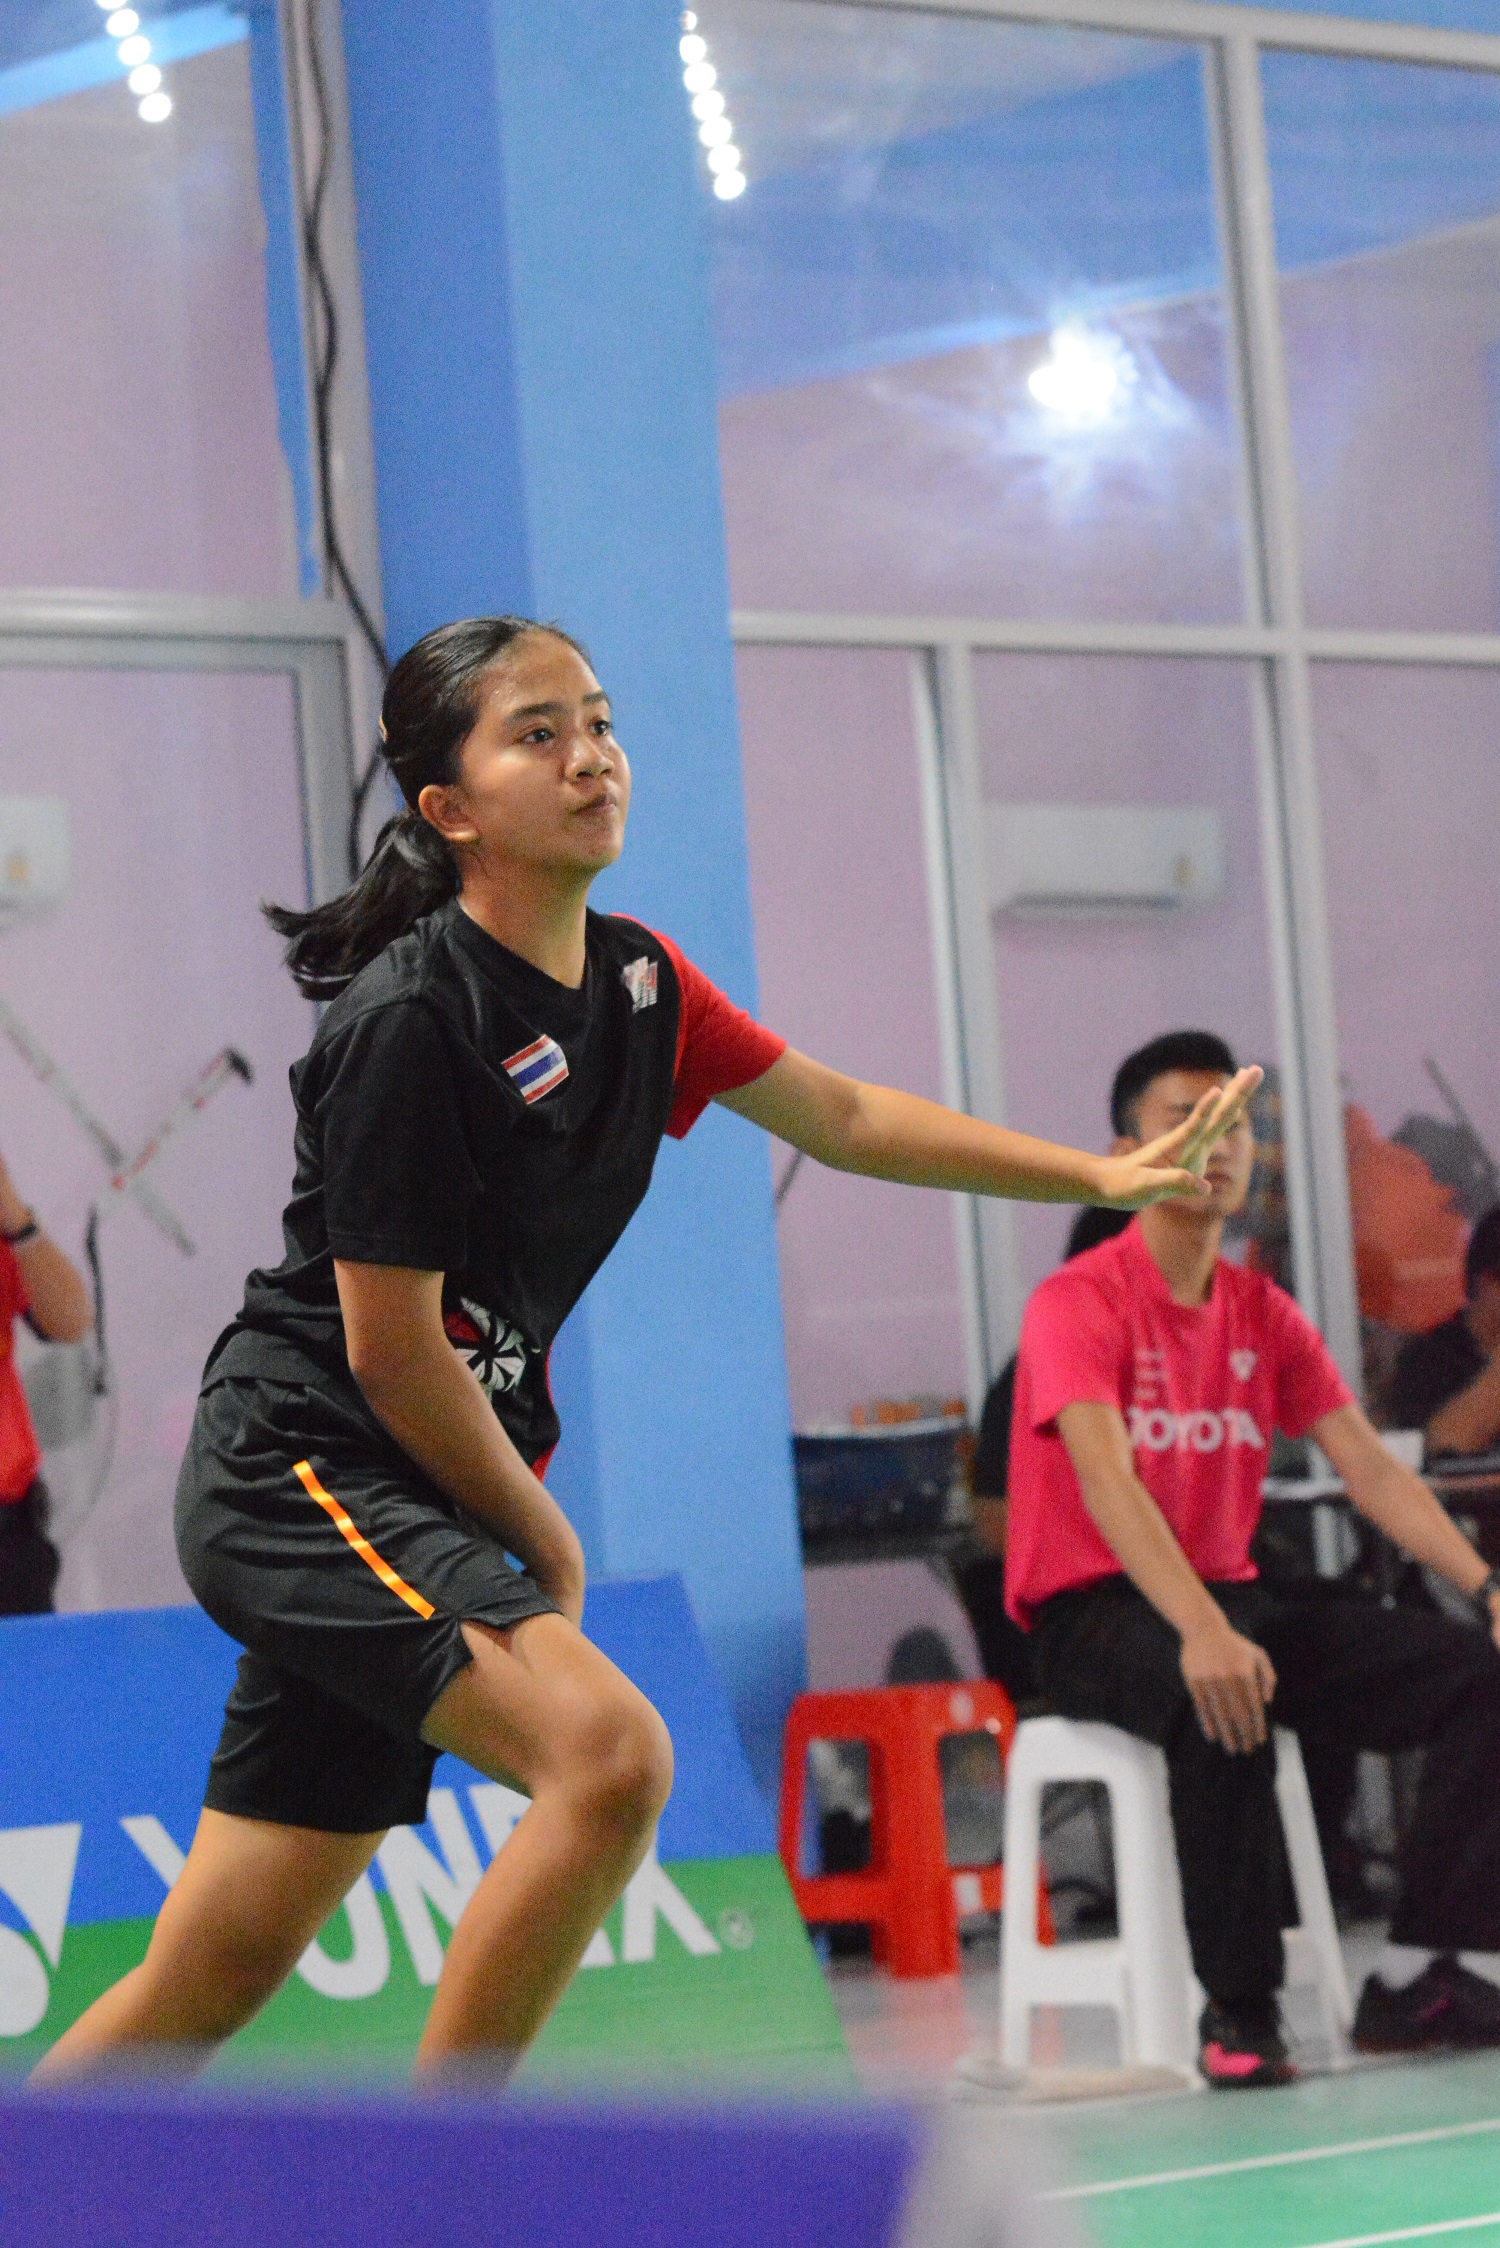 ผลการแข่งขัน โตโยต้า เยาวชนชิงชนะเลิศแห่งประเทศไทย 2563 รอบภูมิภาค (ภาคตะวันออกเฉียงเหนือ)